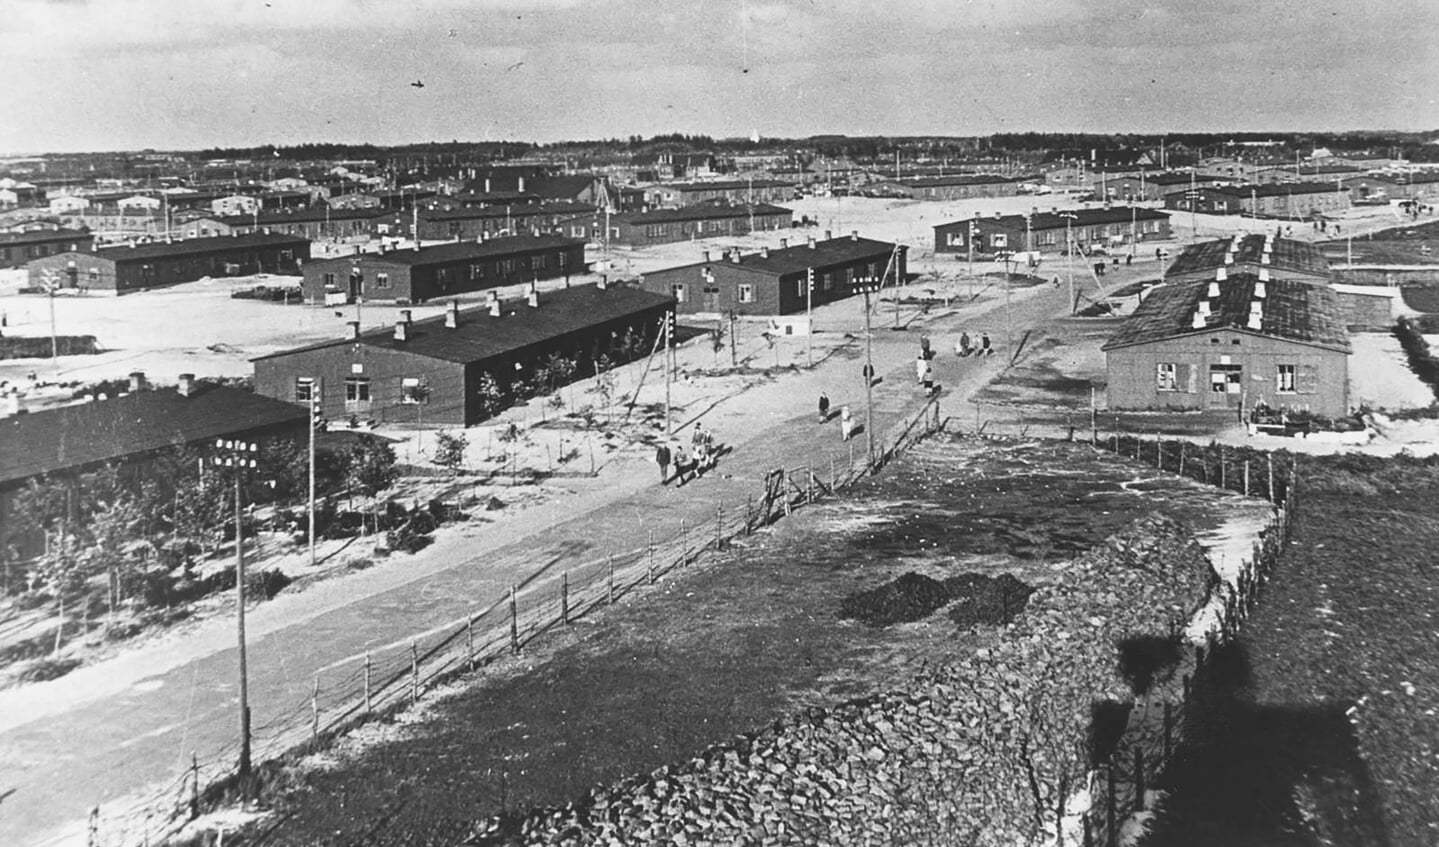 Oksbøllejren i Sydvestjylland var i årene efter Anden Verdenskrig Danmarks største lejr for tyske flygtninge. Da den i 1946 var størst, husede den godt 35.000 flygtninge. Lejren var næsten dobbelt så stor som de næststørste lejre, og den gjorde den lille stationsby Oksbøl til en af Danmarks største byer på niveau med Esbjerg og Randers. Selve lejrarealet var på fire kvadratkilometer og er i dag en del af Aal Plantage. Lejrens barakker og bohave blev solgt, efter at de sidste flygtninge havde forladt lejren i 1949. I dag er der meget få spor tilbage efter lejren. Foto: